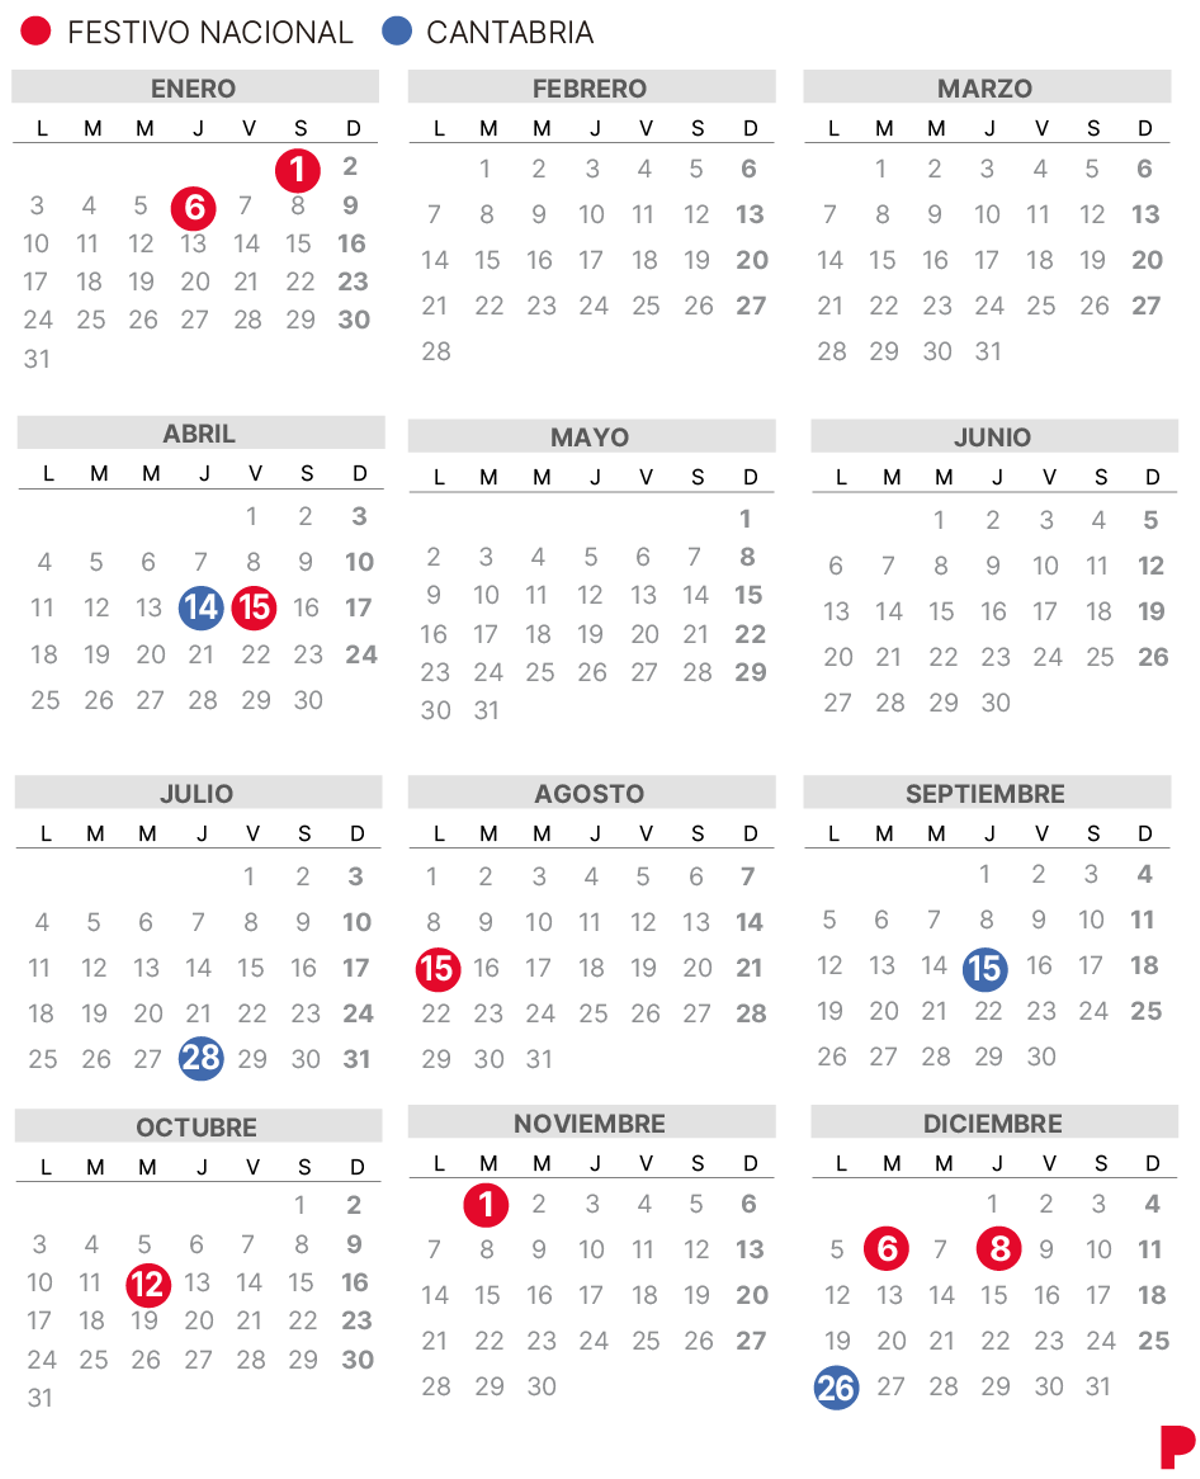 Calendari laboral de Cantàbria del 2022 (amb tots els dies festius)